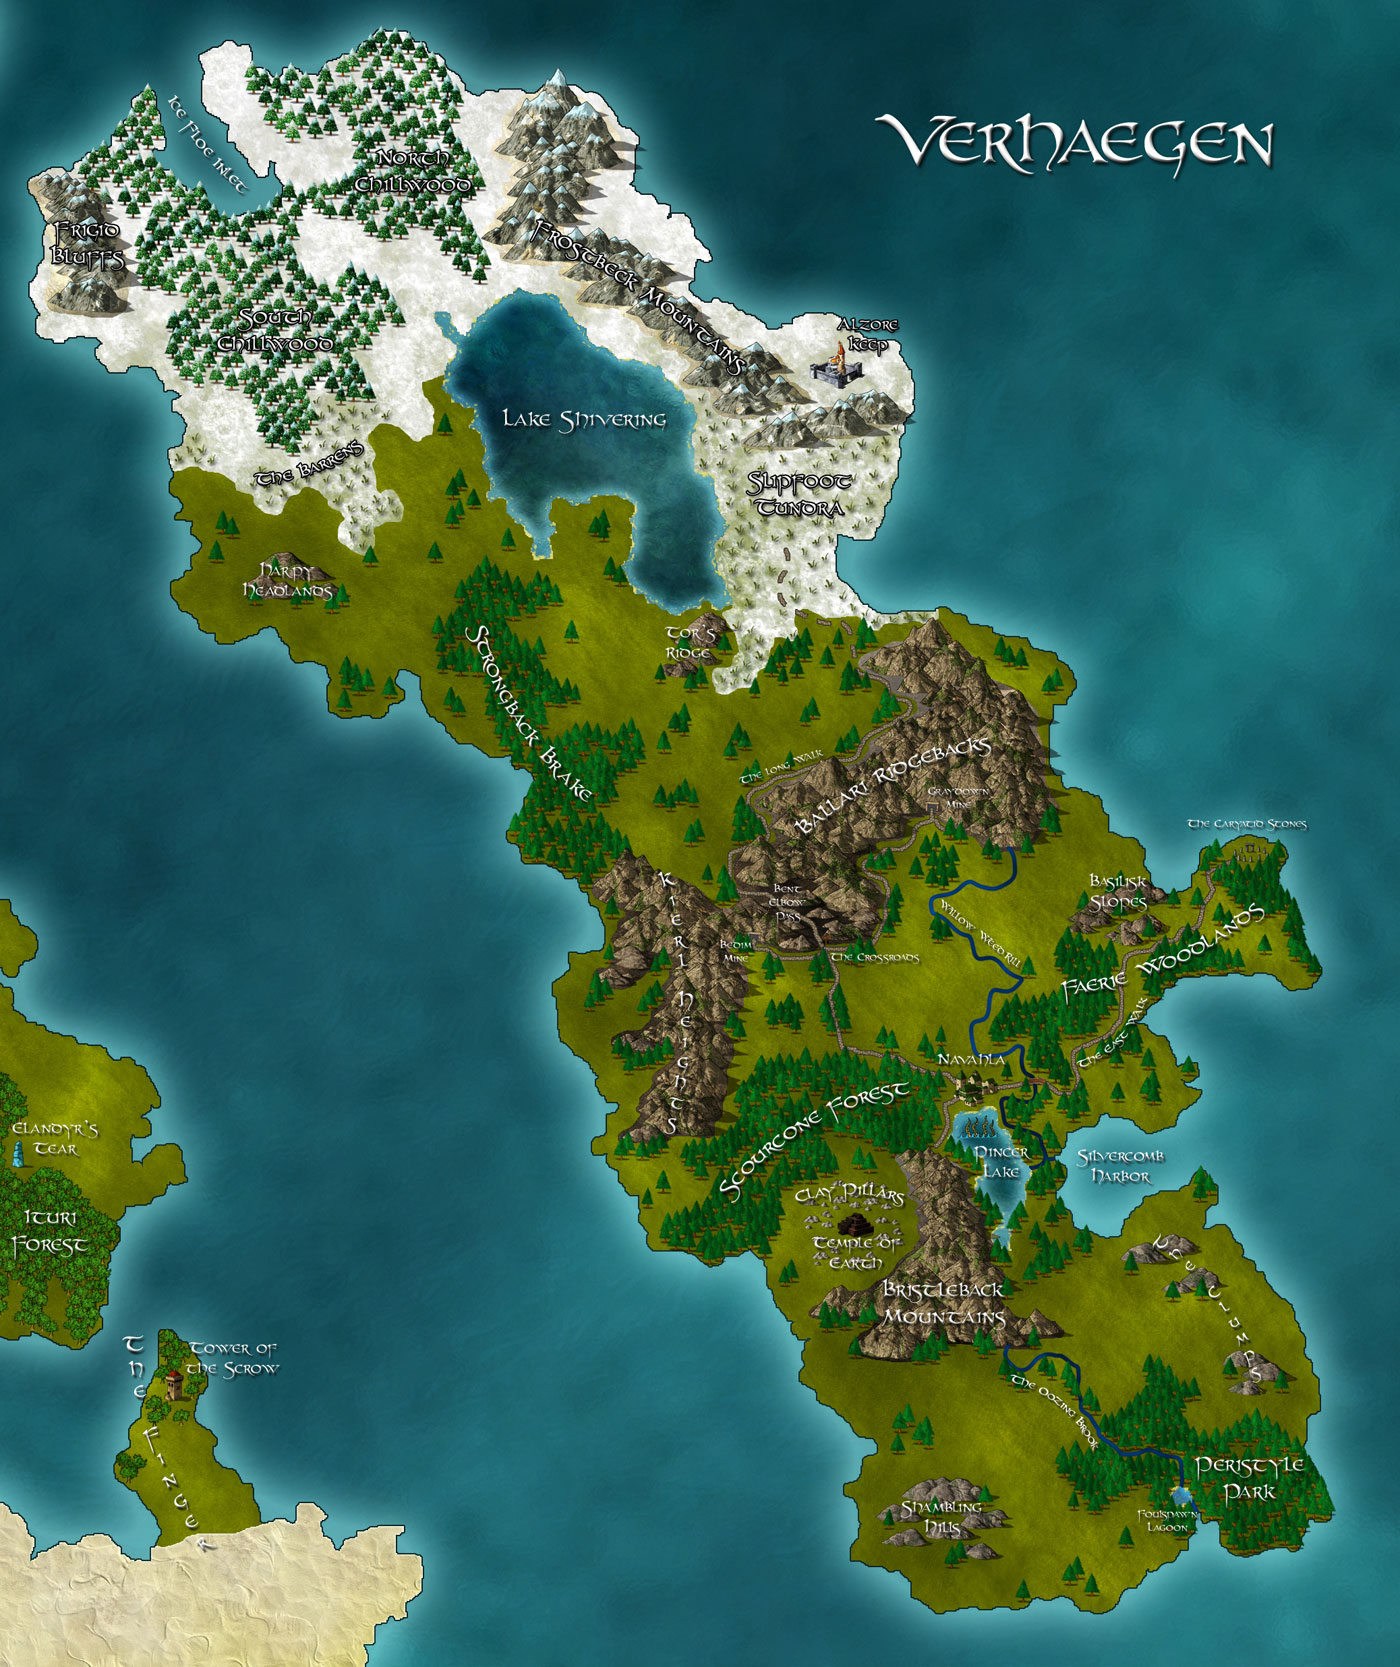 fantasy archipelago map